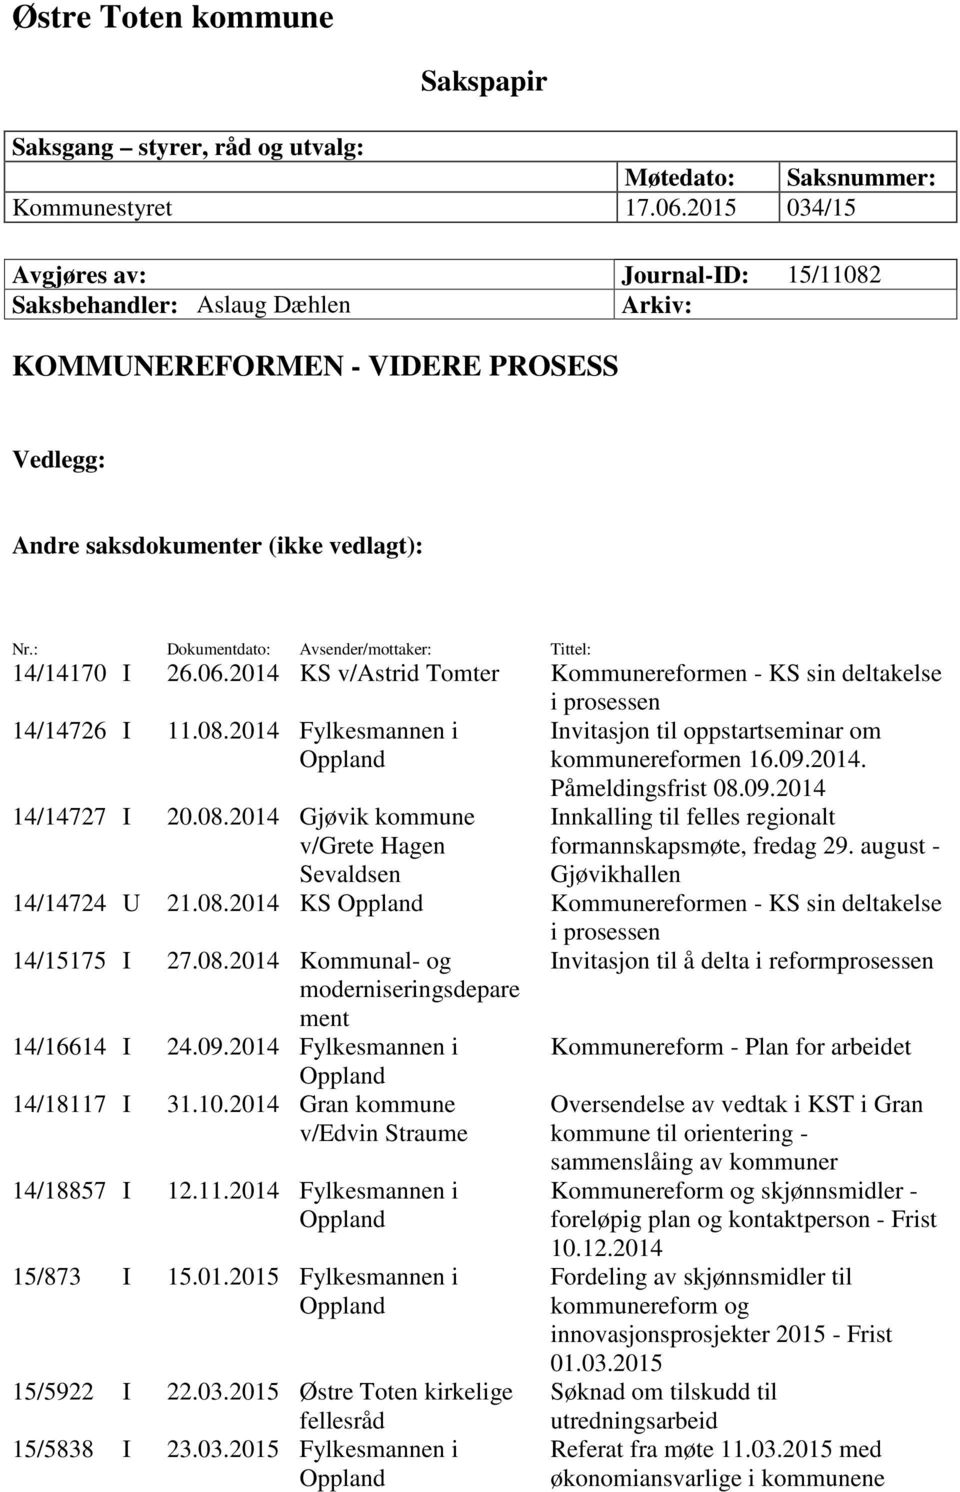 : Dokumentdato: Avsender/mottaker: Tittel: 14/14170 I 26.06.2014 KS v/astrid Tomter Kommunereformen - KS sin deltakelse i prosessen 14/14726 I 11.08.